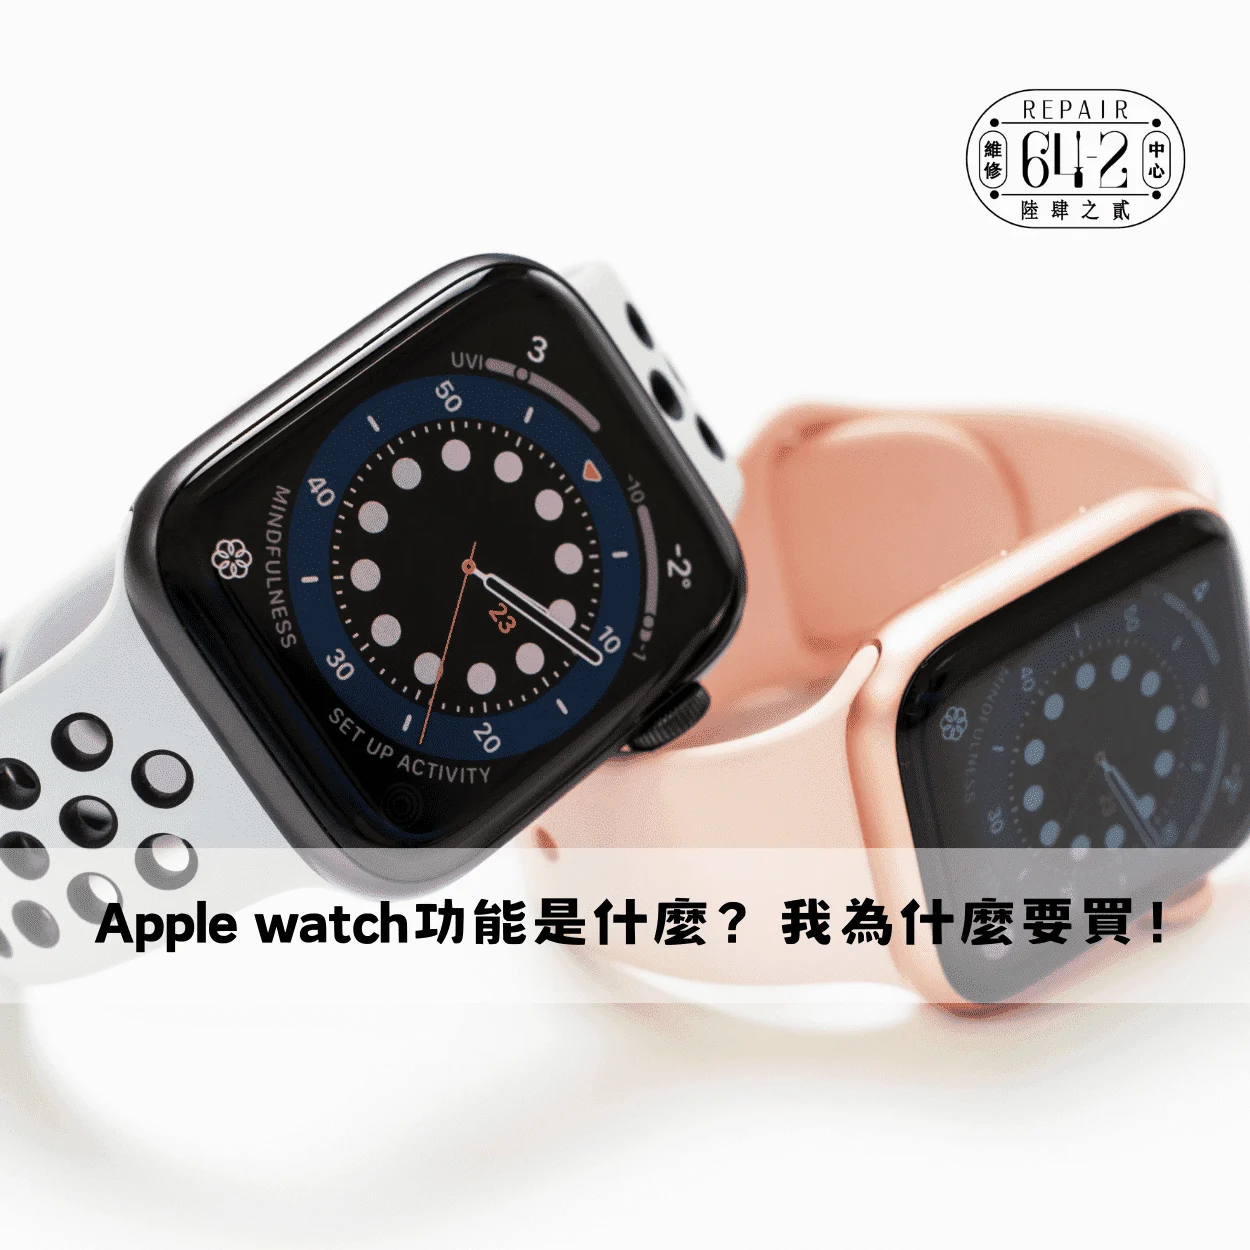 Apple Watch比較懶人包-Apple Watch錶面